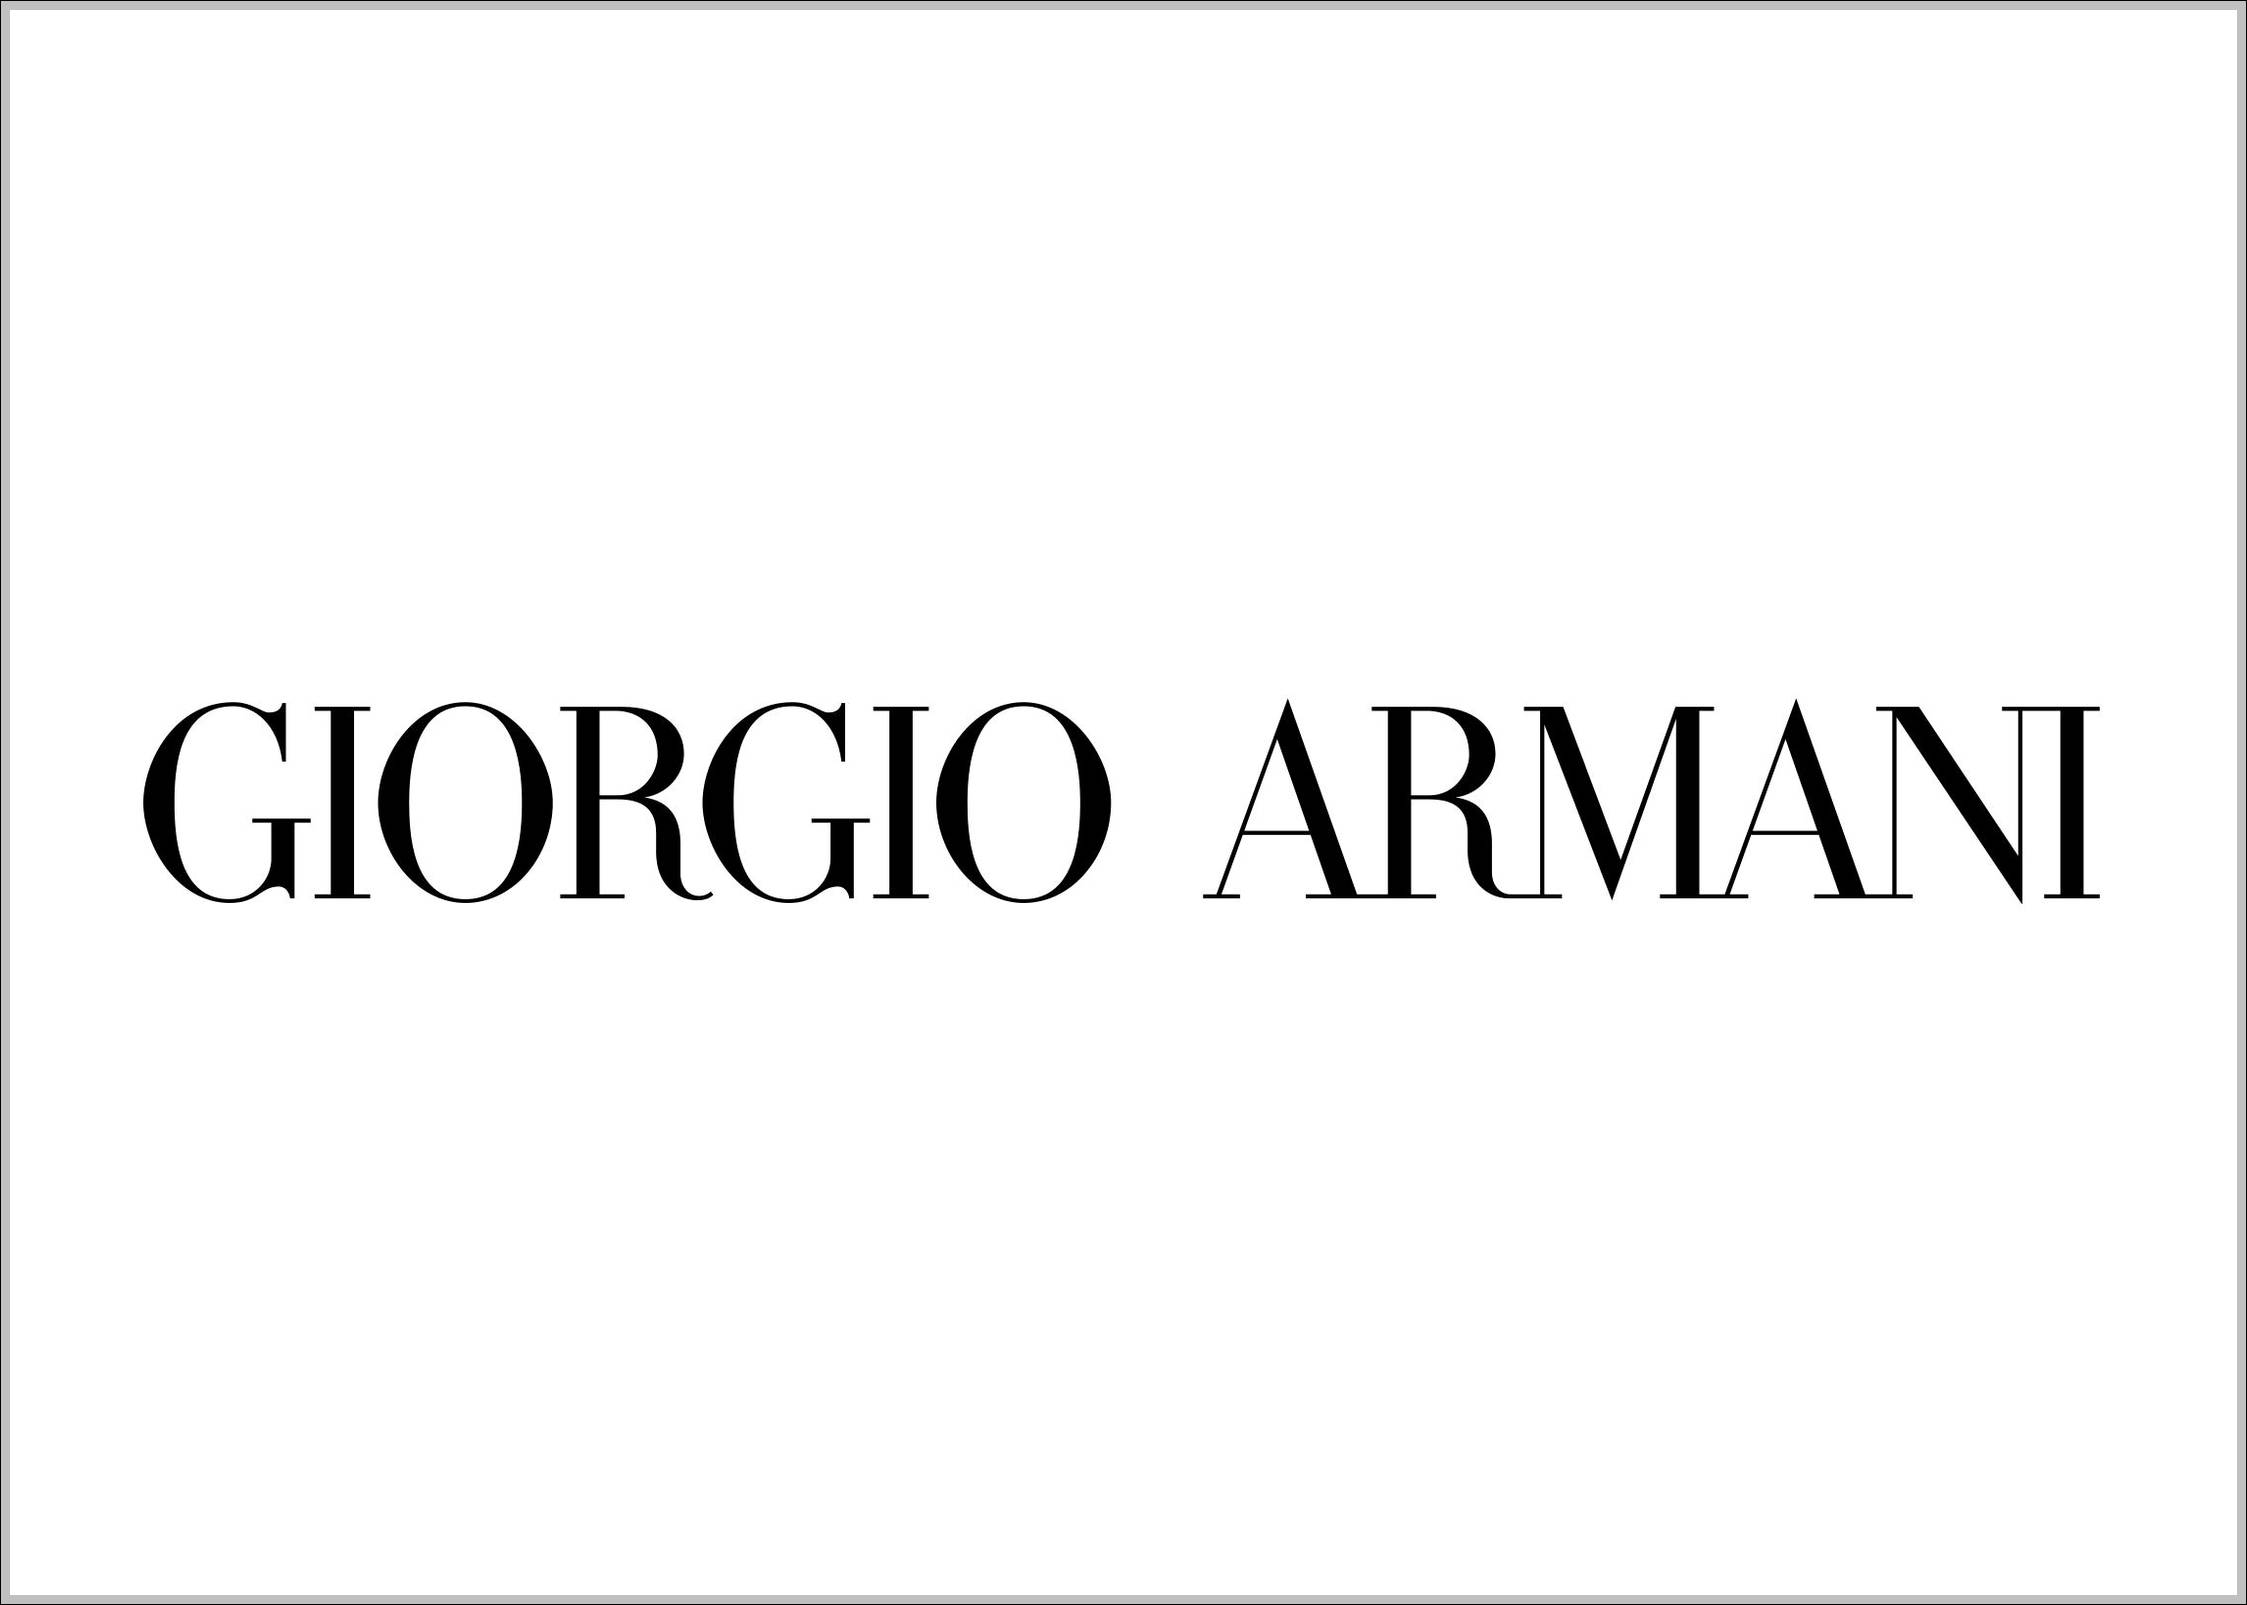 Giorgio Armani sign